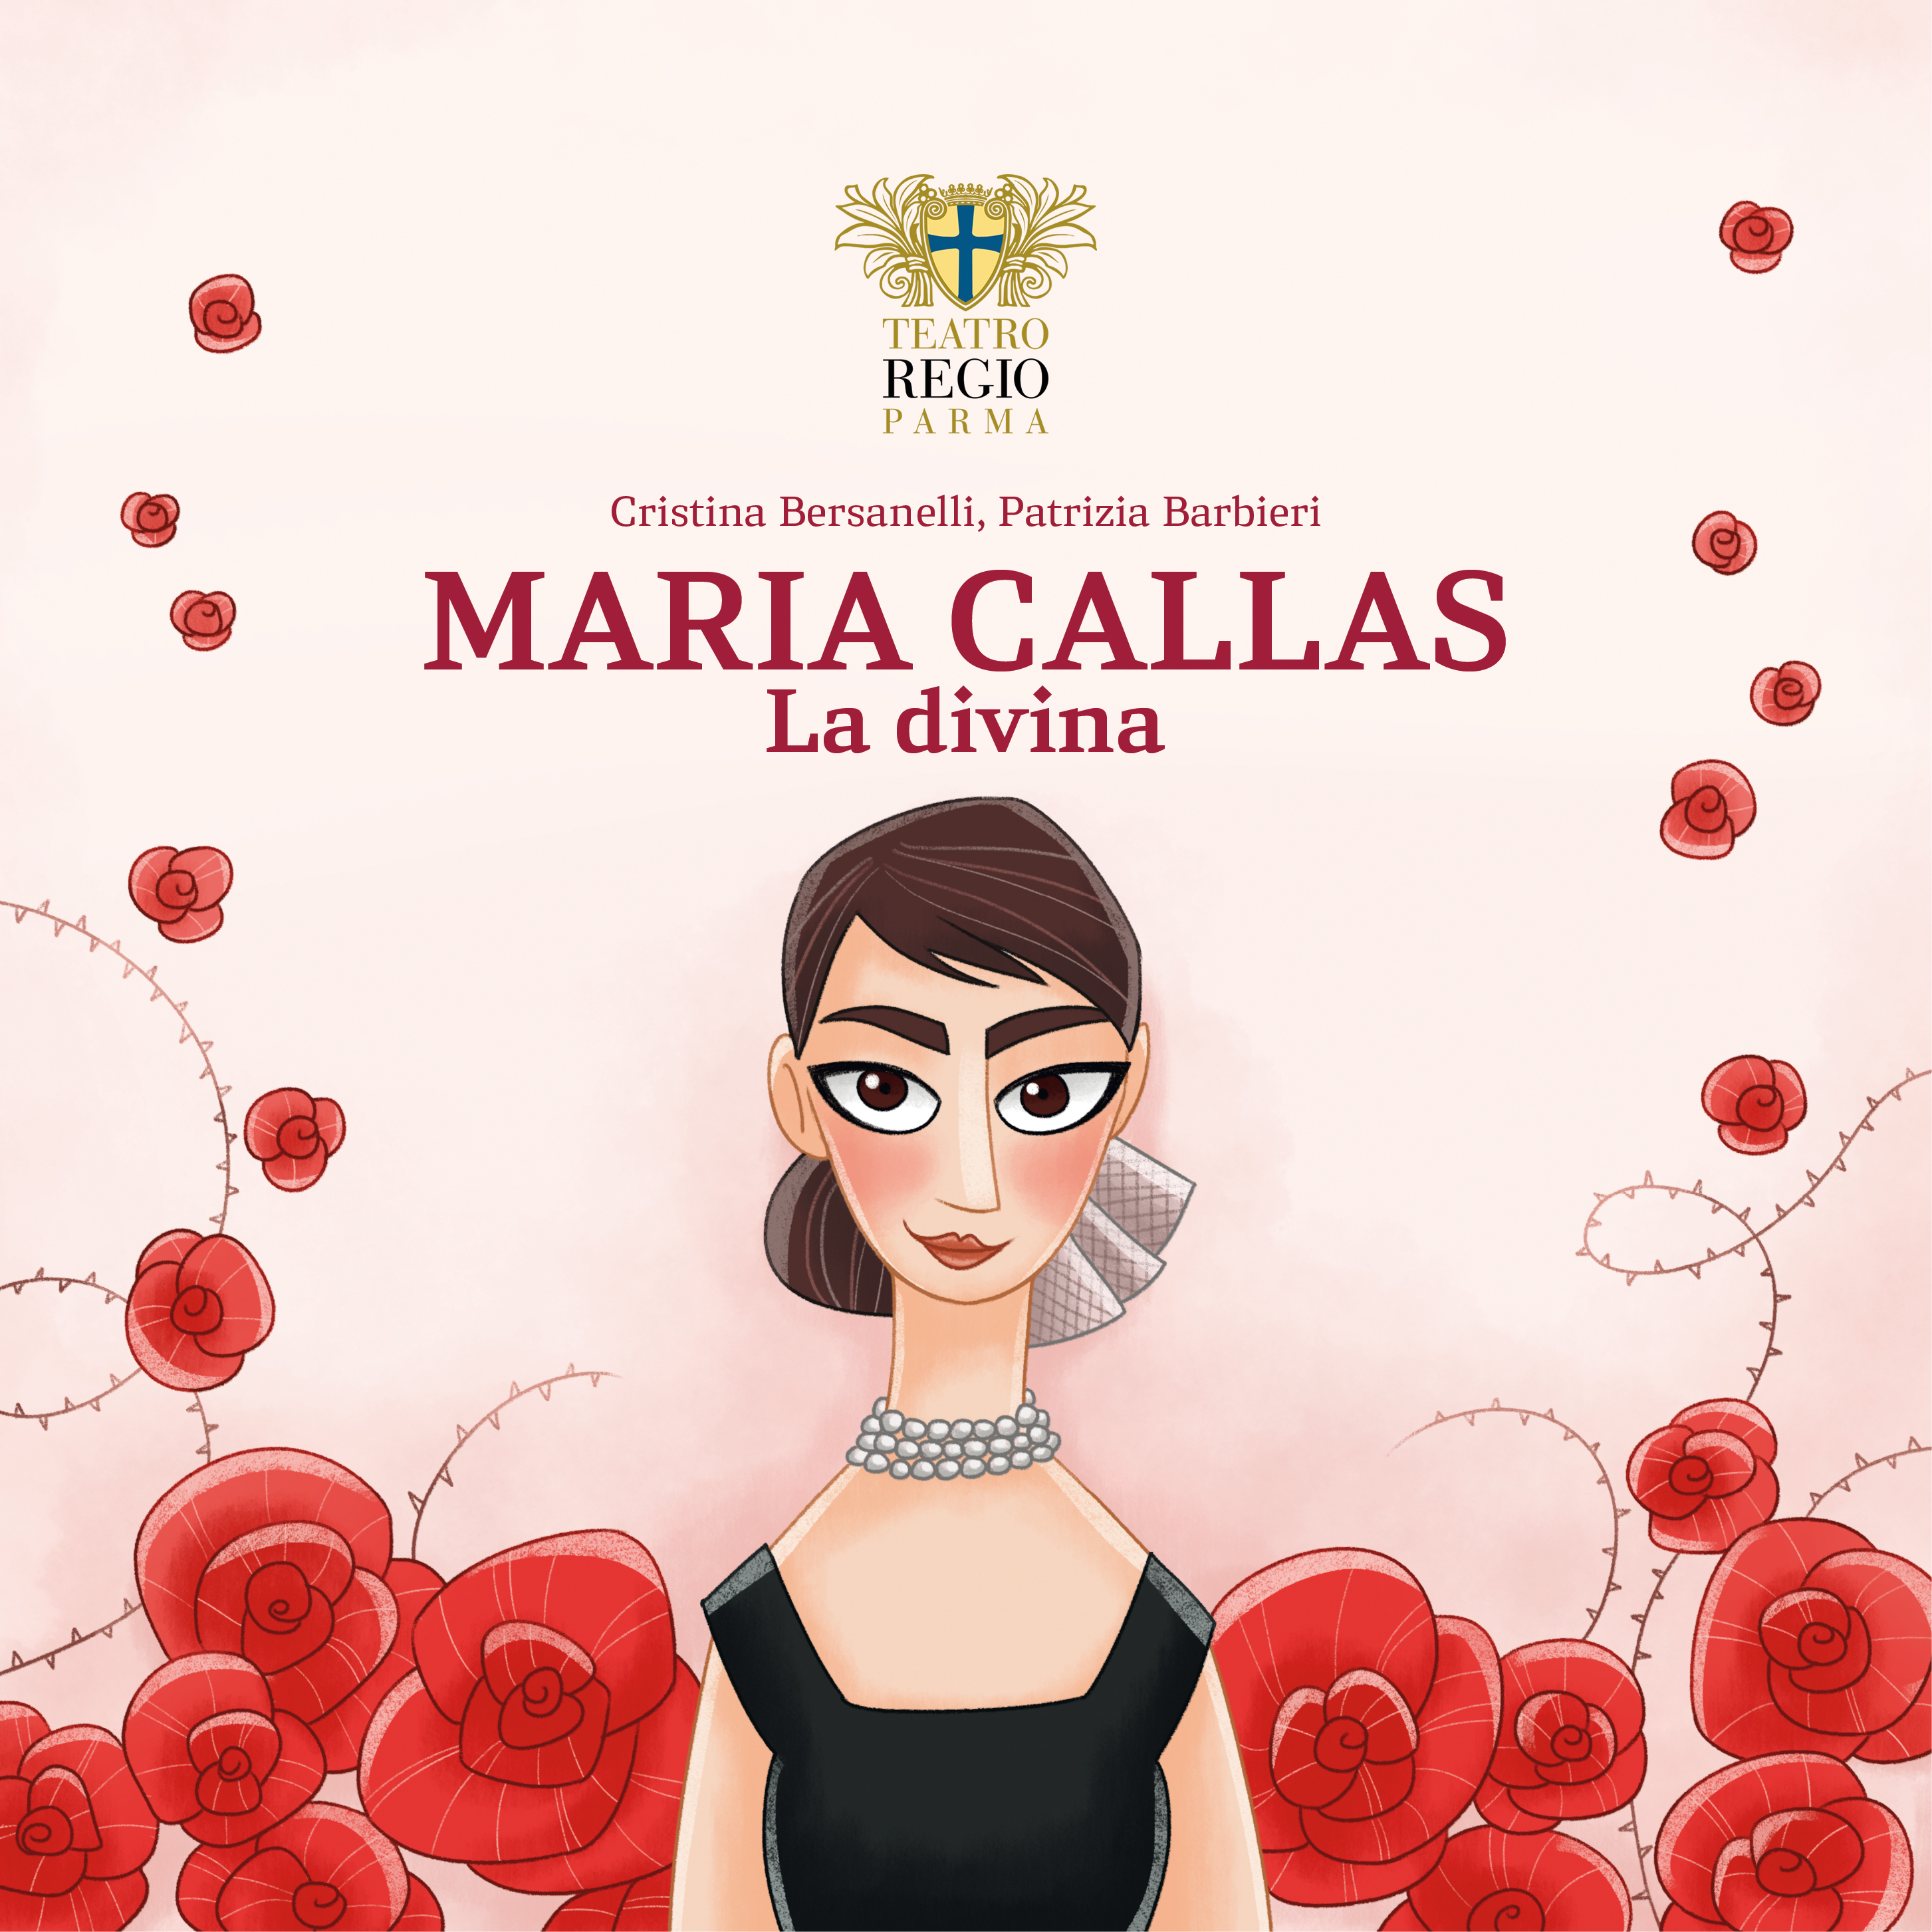 Maria Callas  the divine